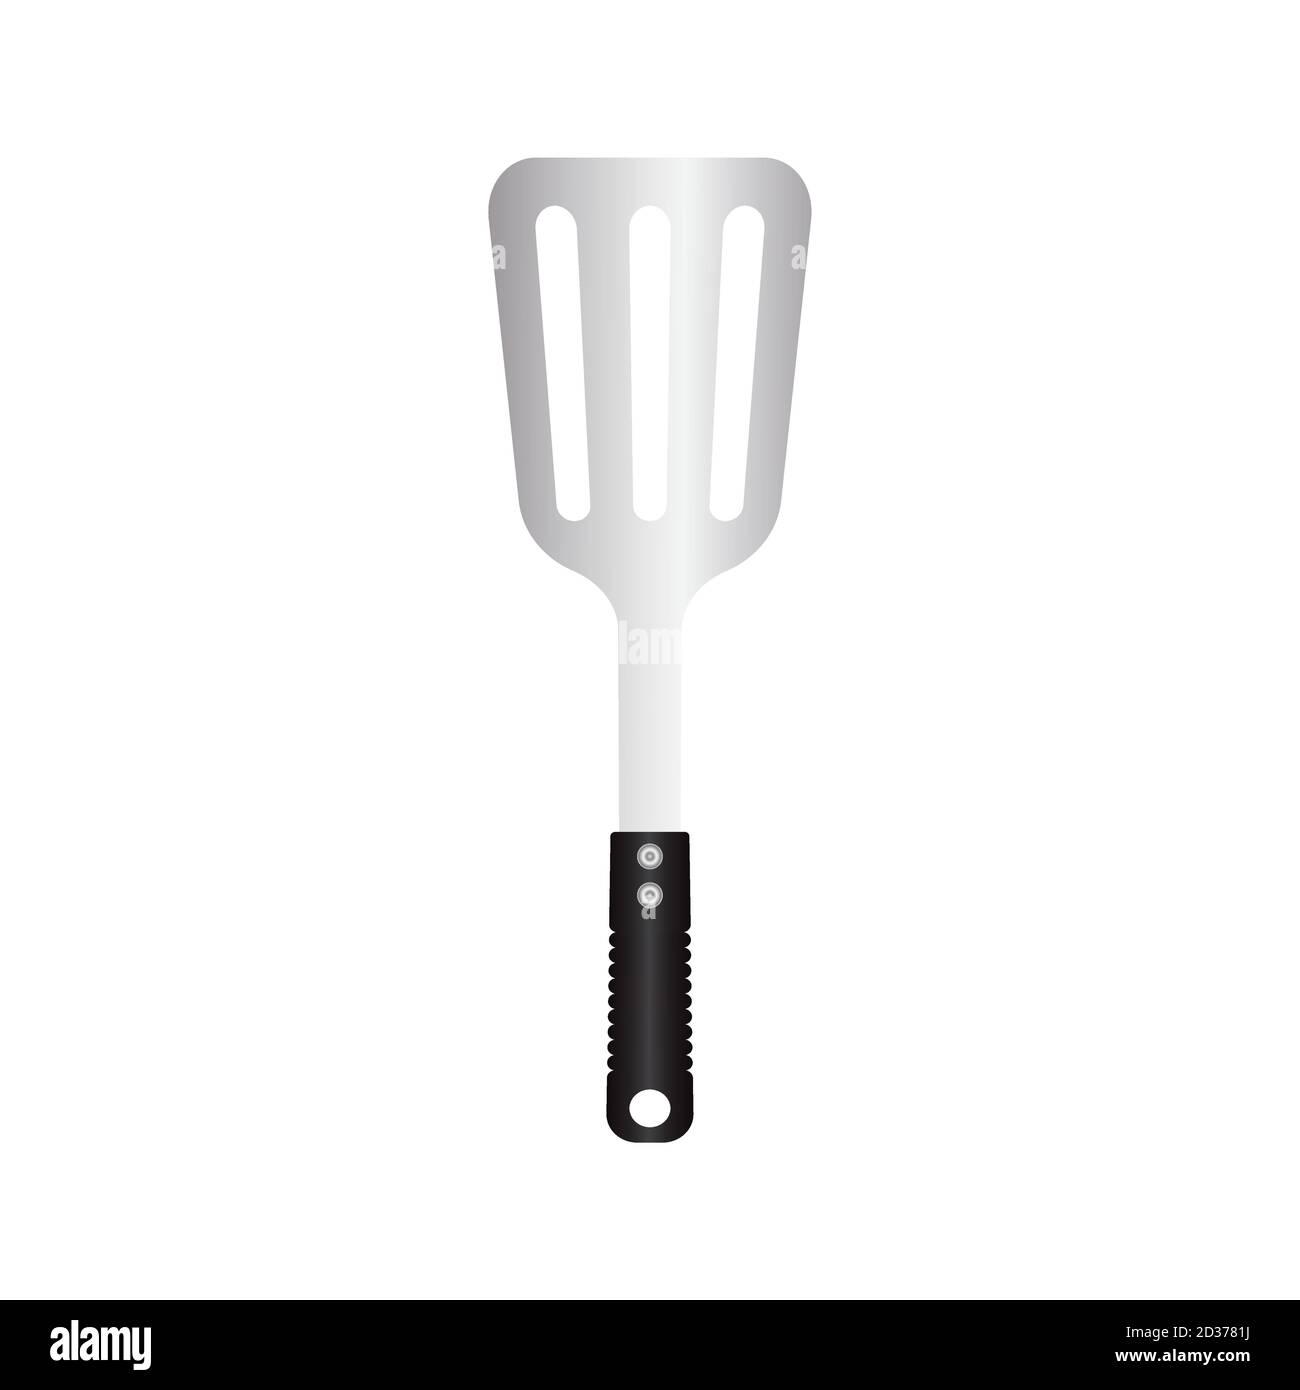 colección de siluetas de utensilios de cocina 2755167 Vector en